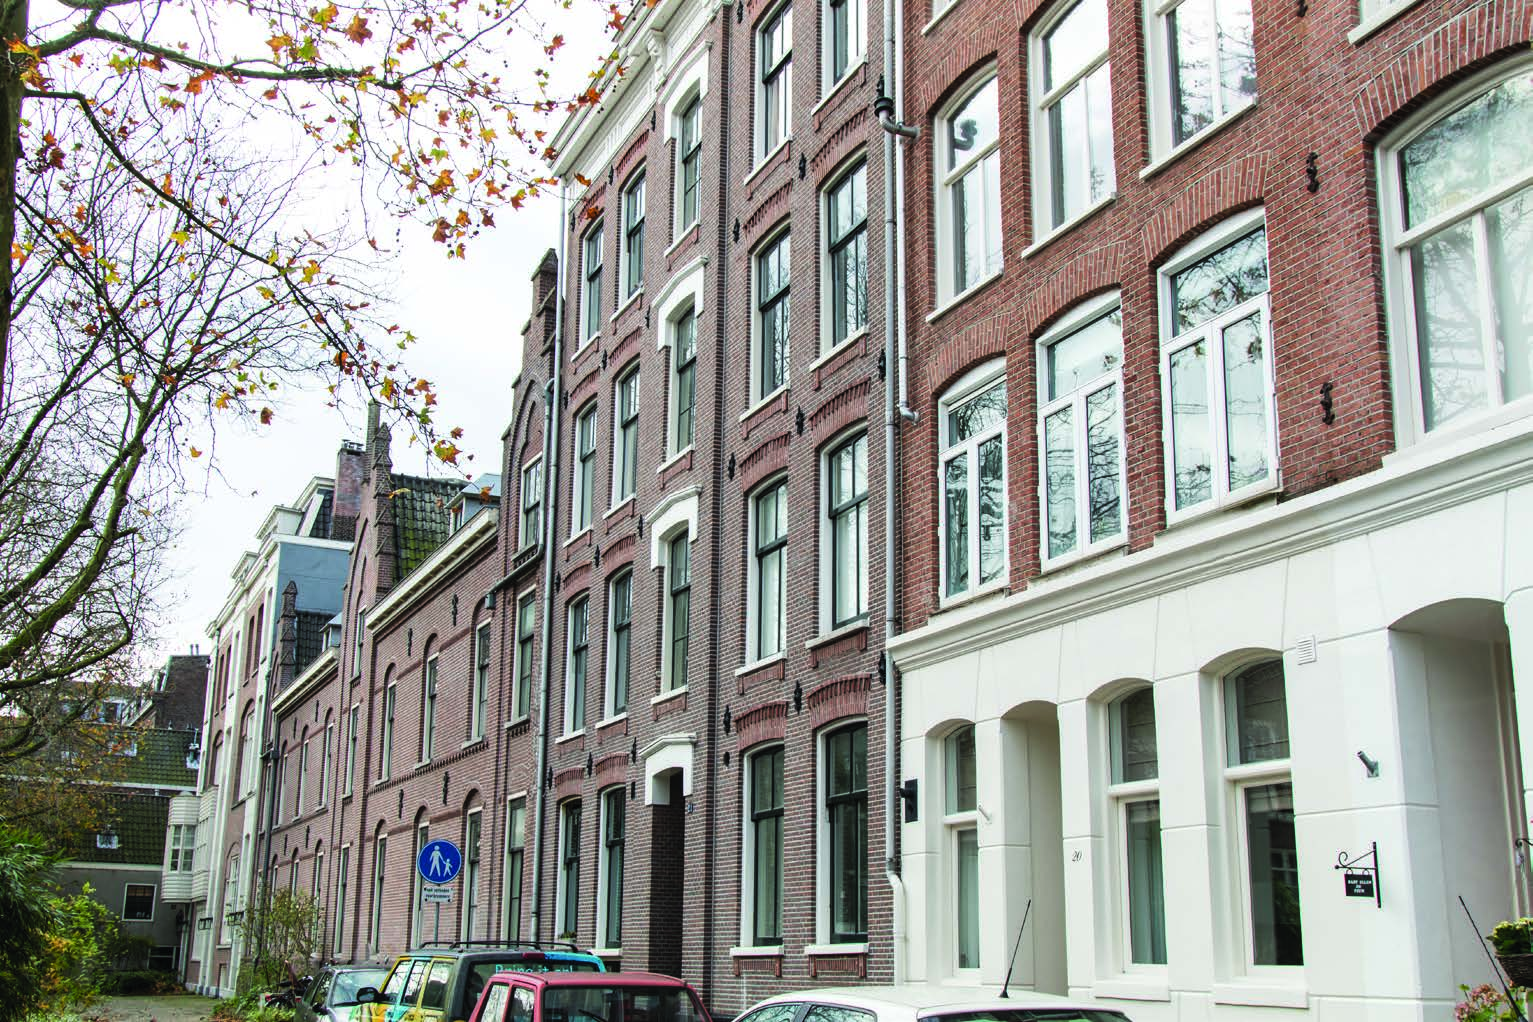 PAND & LIGGING Marnixstraat / Westerkade 16 PAND & LIGGING De studio appartmenten zijn zeer centraal gelegen tussen de Rozengracht, de Nassaukade en de Brouwersgracht.